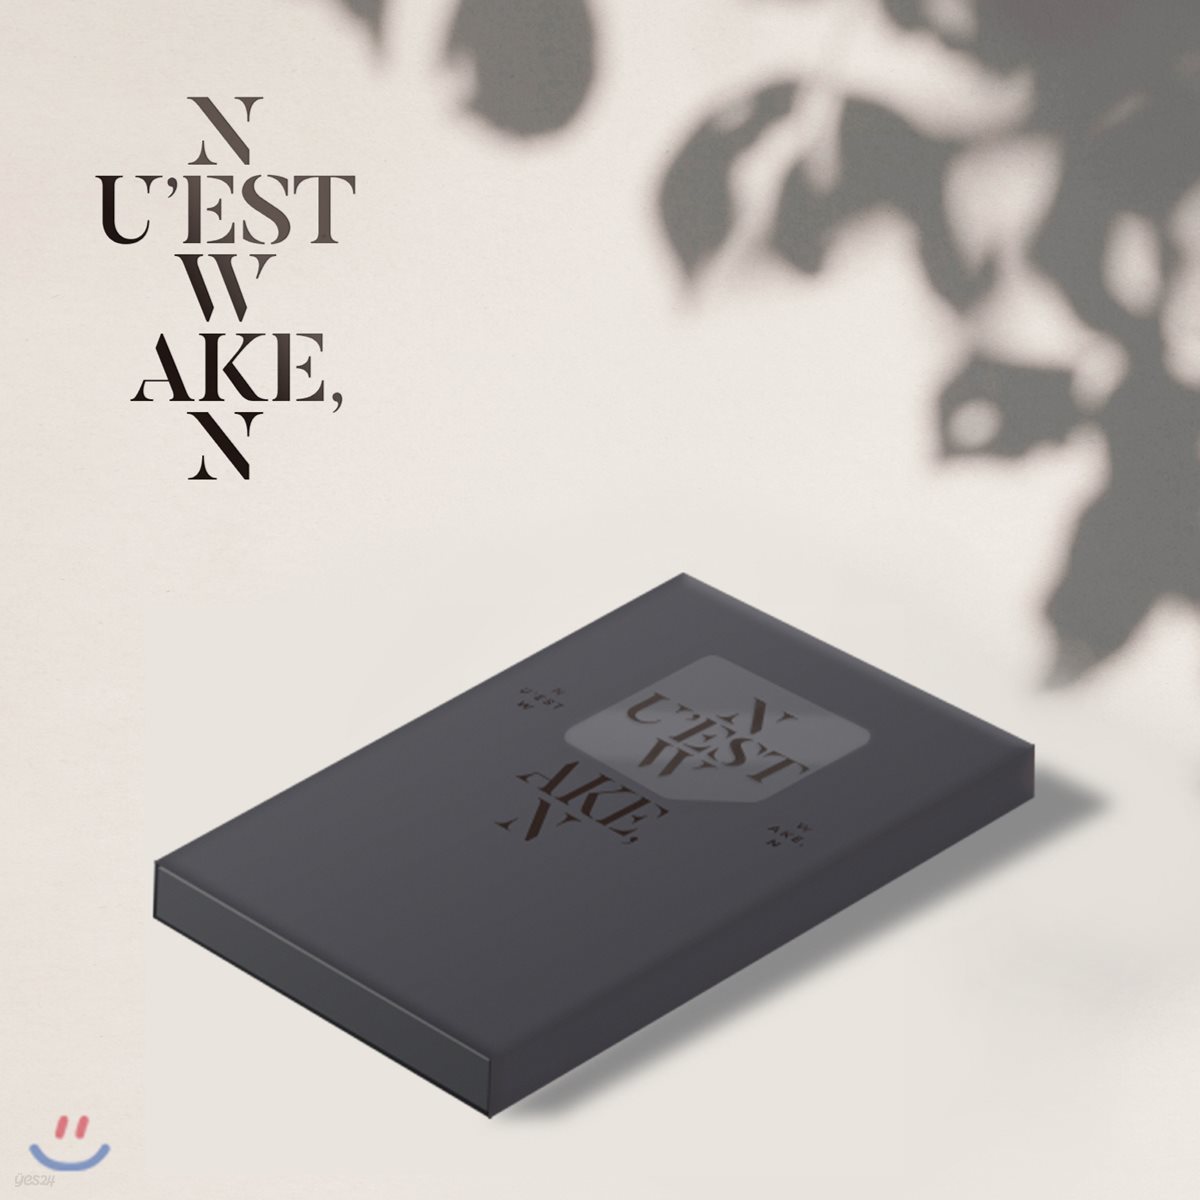 뉴이스트 W (NU’EST W) - [WAKE,N] [Ver. 2][스마트 뮤직 앨범(키노 앨범)]